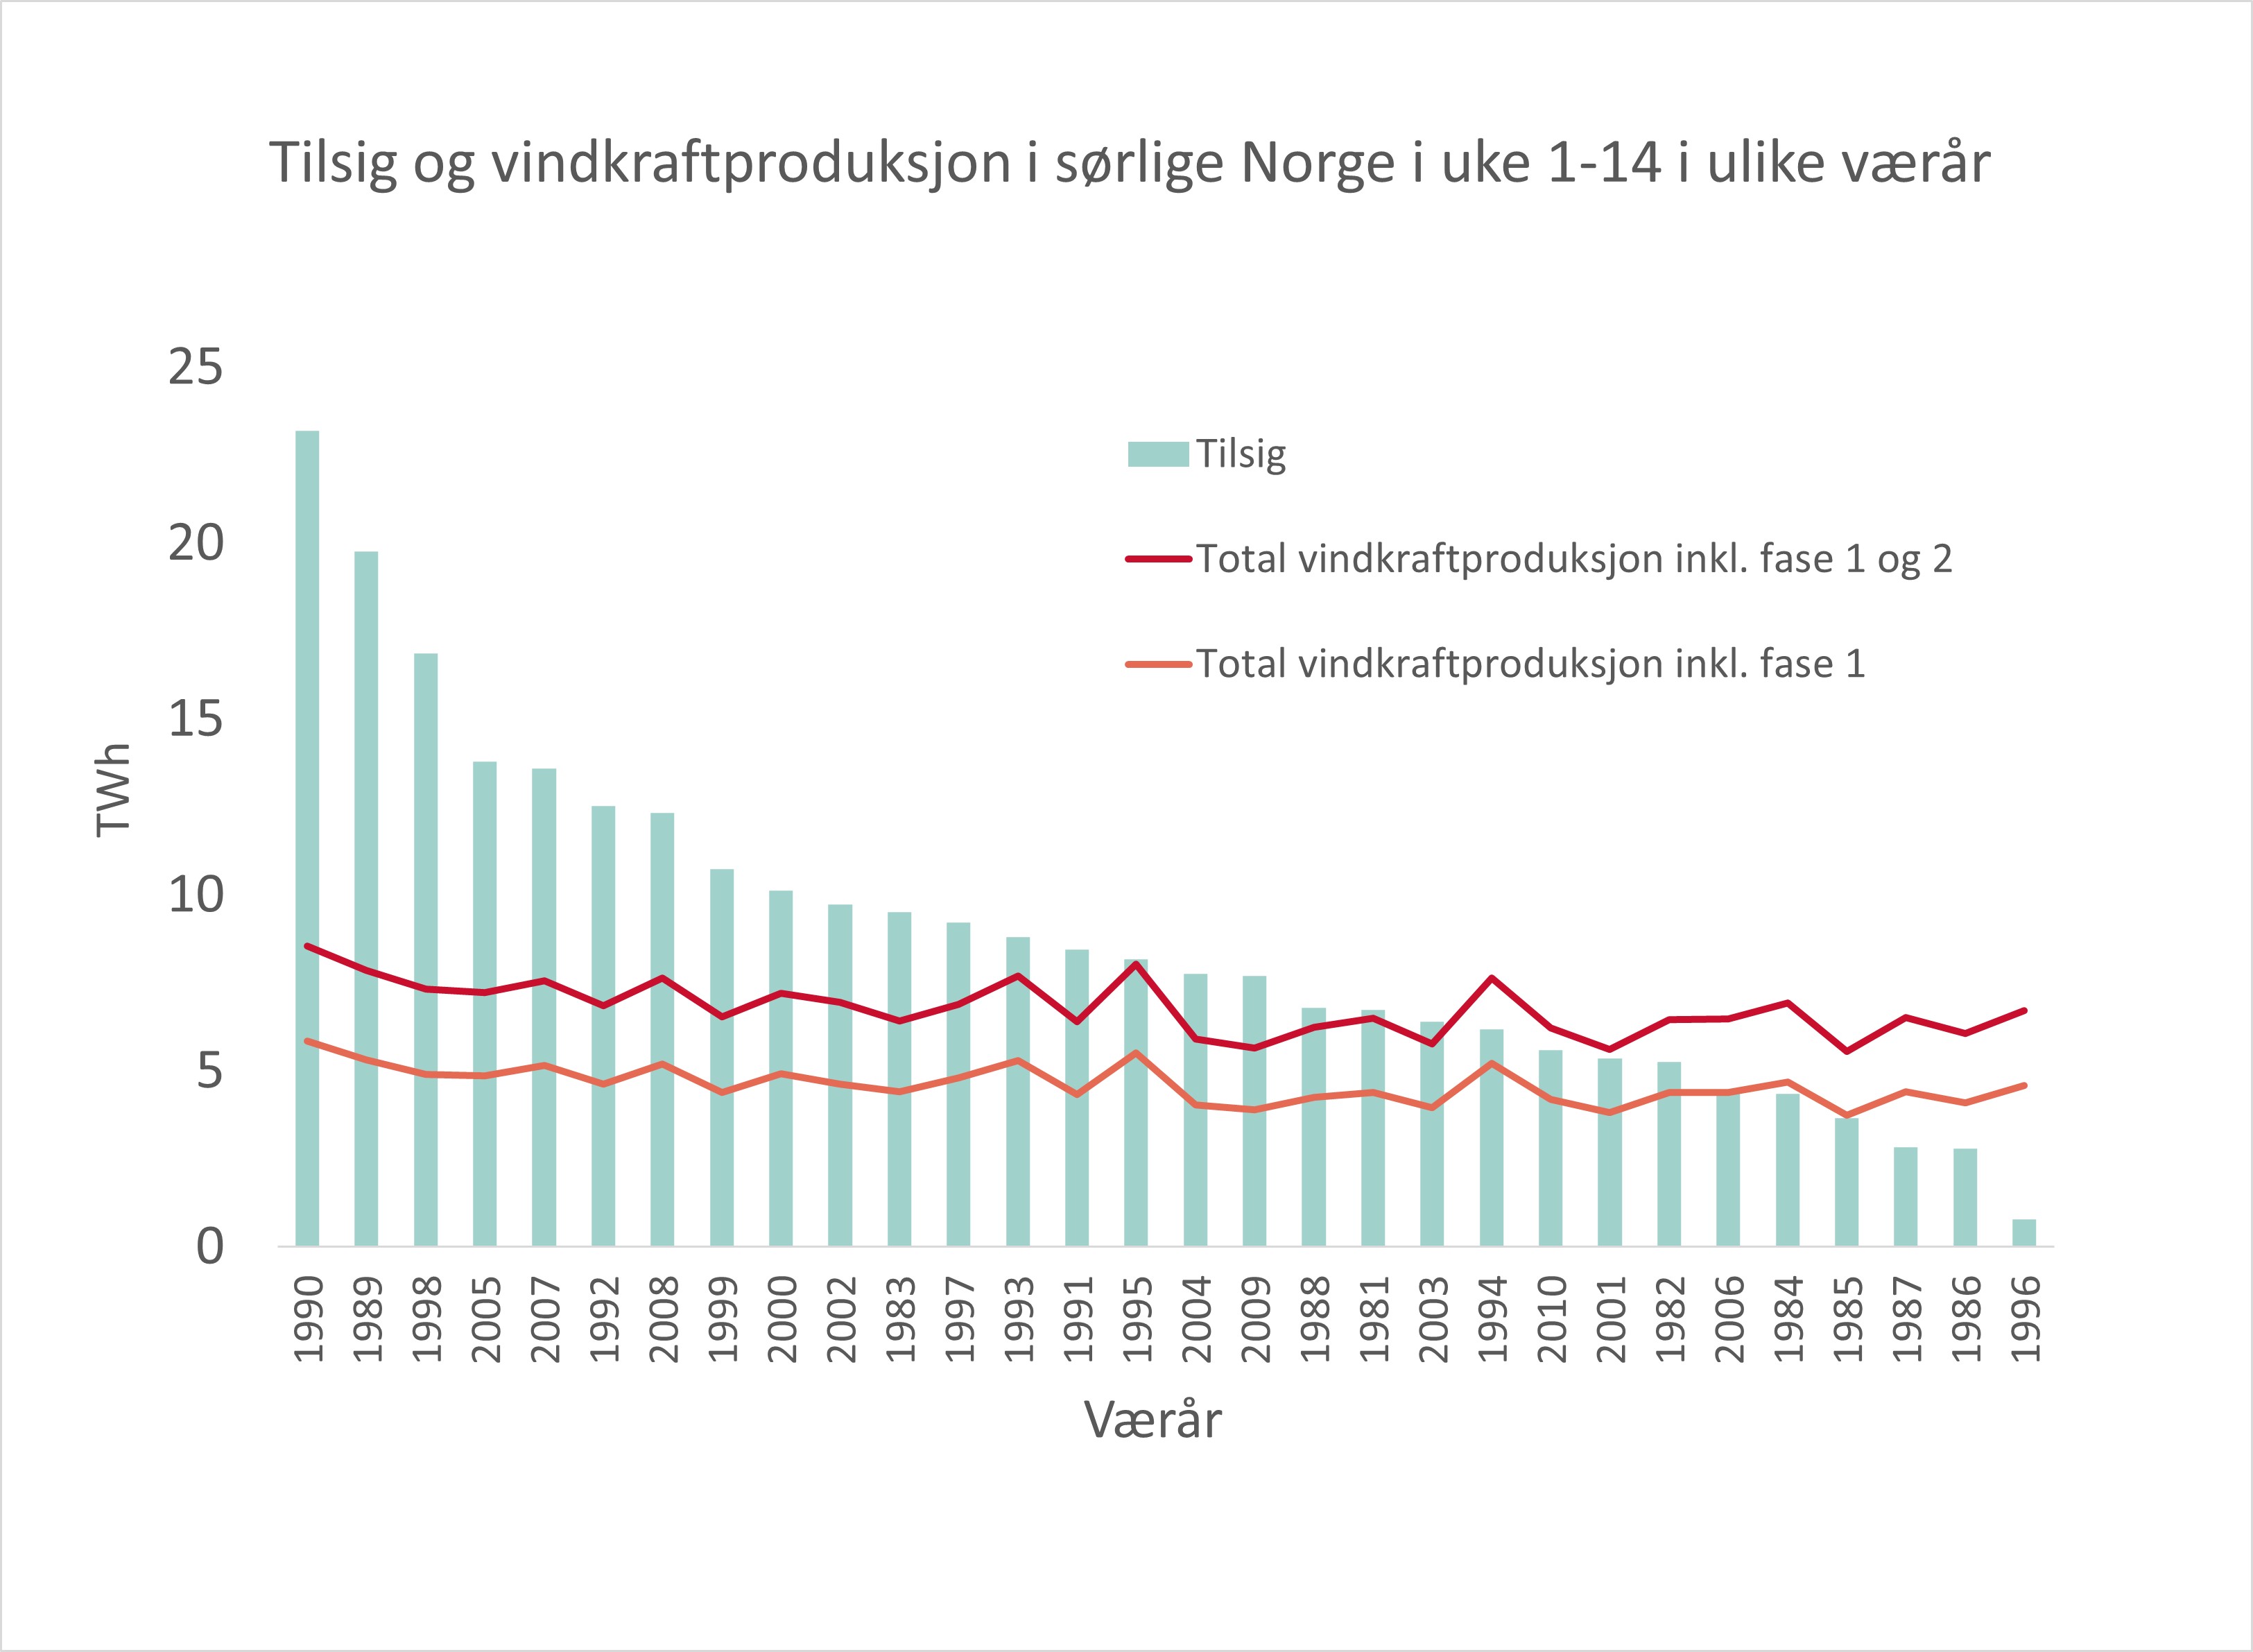 Tilsig til vannkraftverkene og vindkraftproduksjonen i sørlige Norge (NO1, NO2, NO5) i løpet av de første fjorten ukene i året i alle værscenarioer i NVEs Samnett-modell. Kilde: NVE.